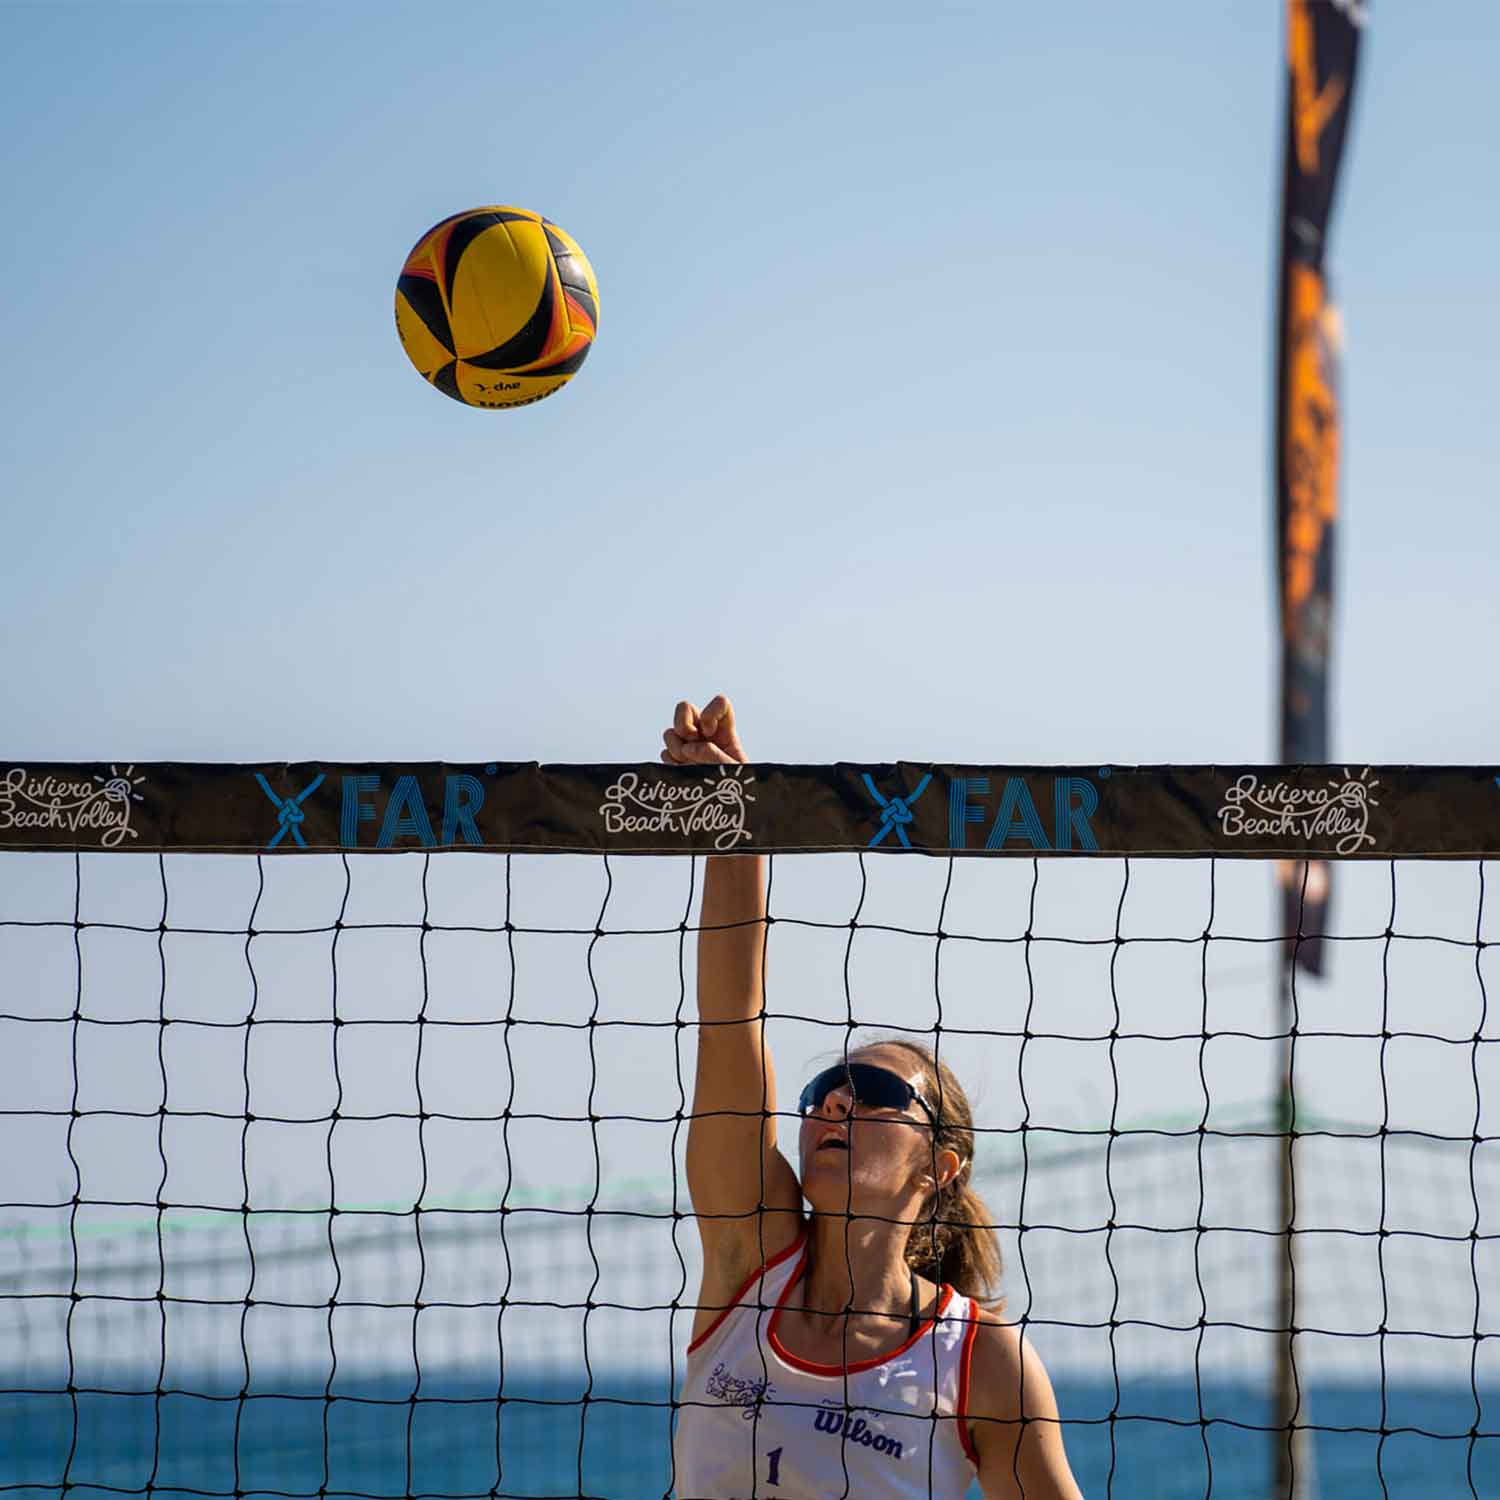 Netze für Beach-Volleyball, Strandtennis und Strandfußball